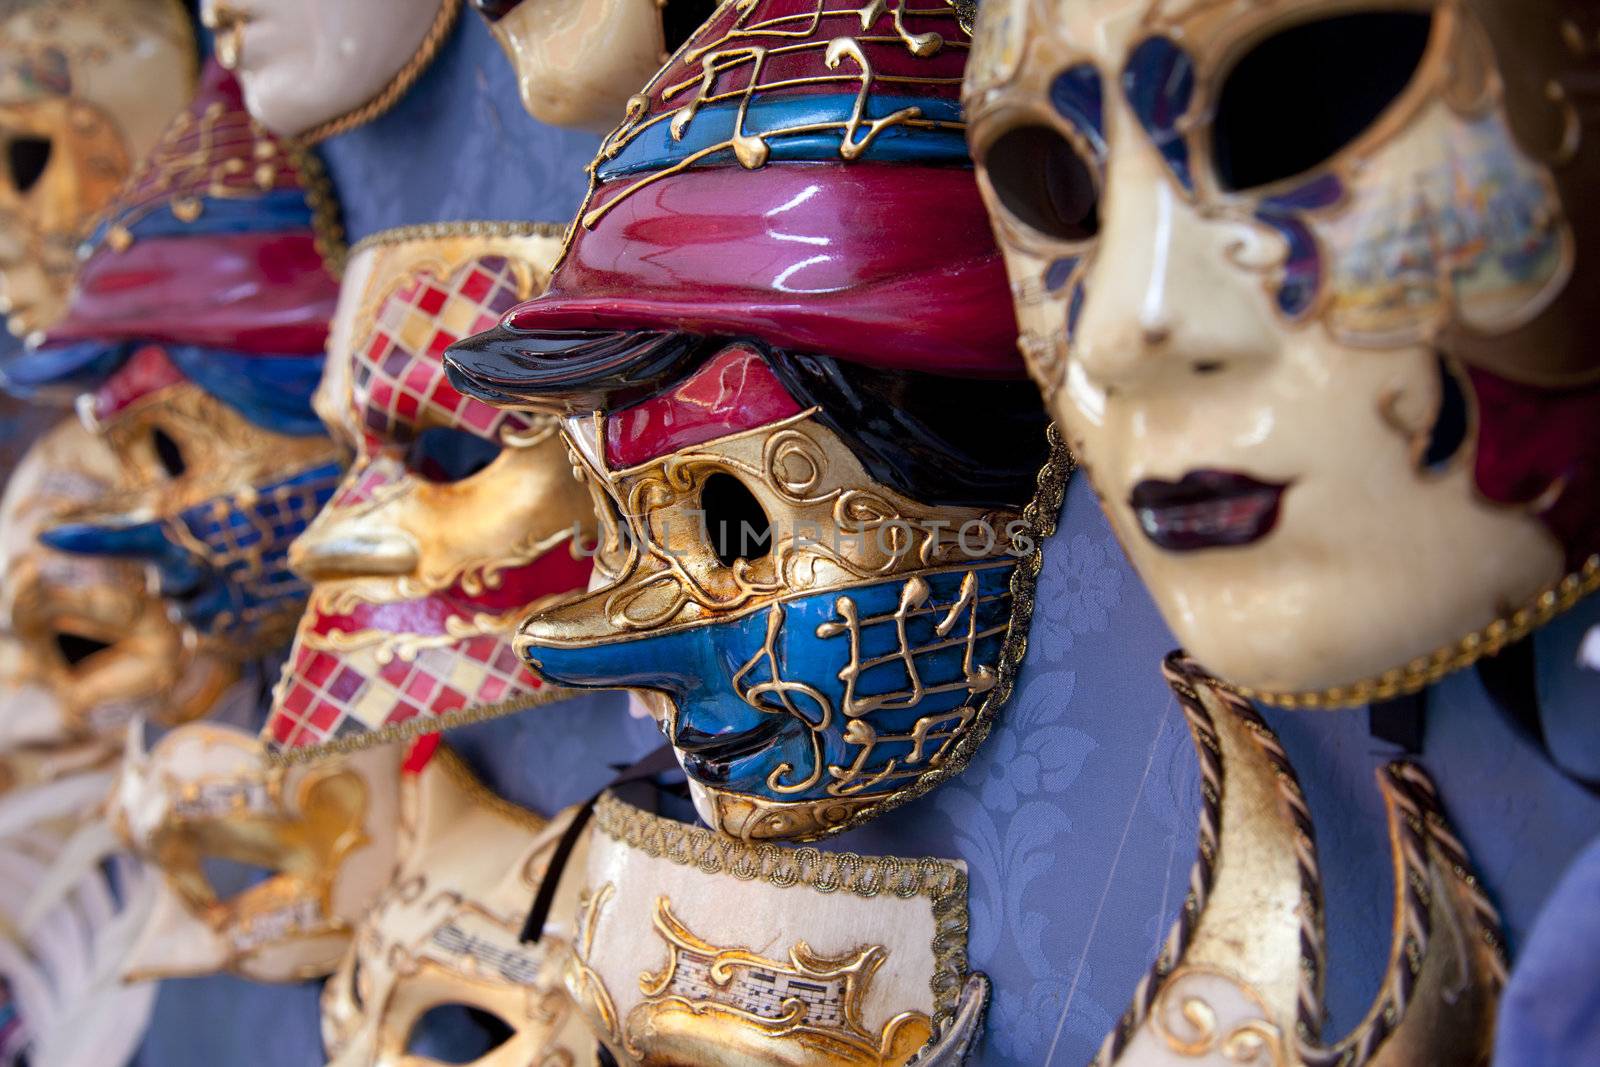 Several masks in Venice in Italy